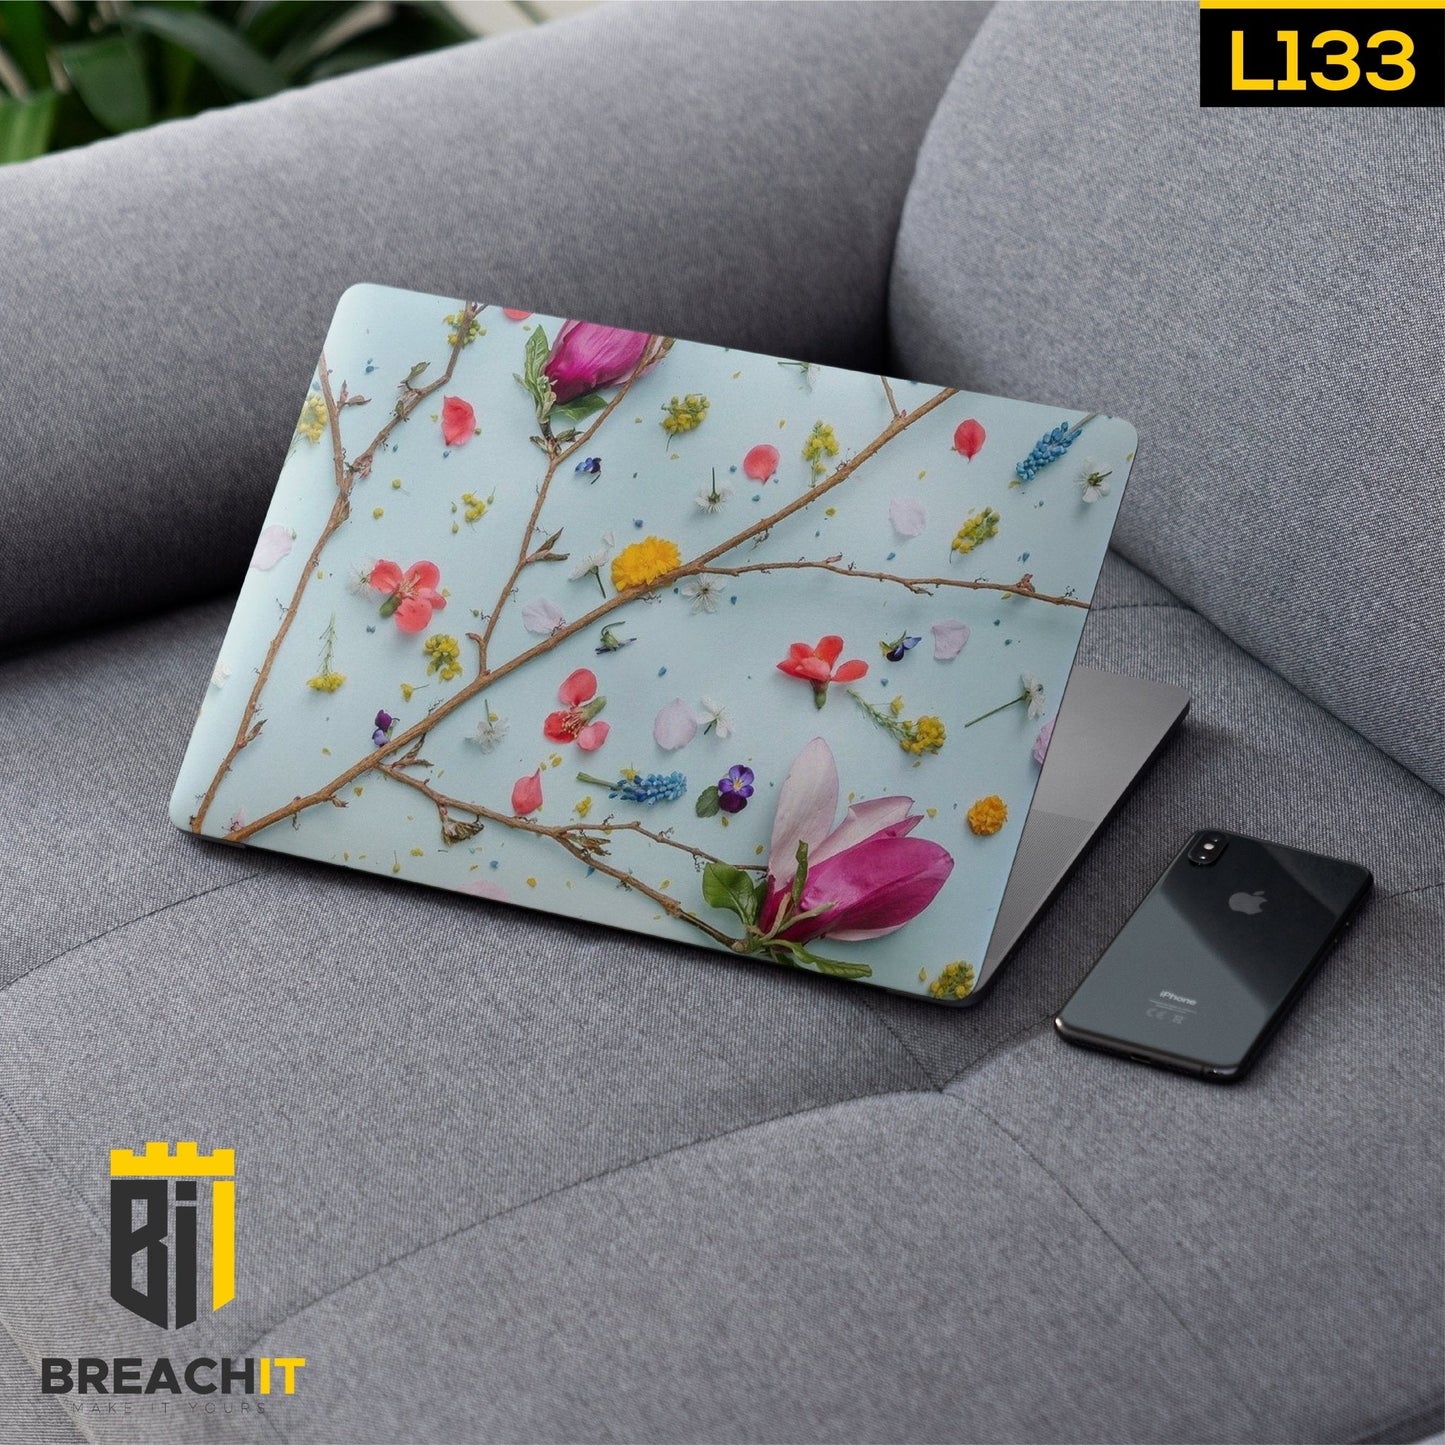 L133 Floral Laptop Skin - BREACHIT